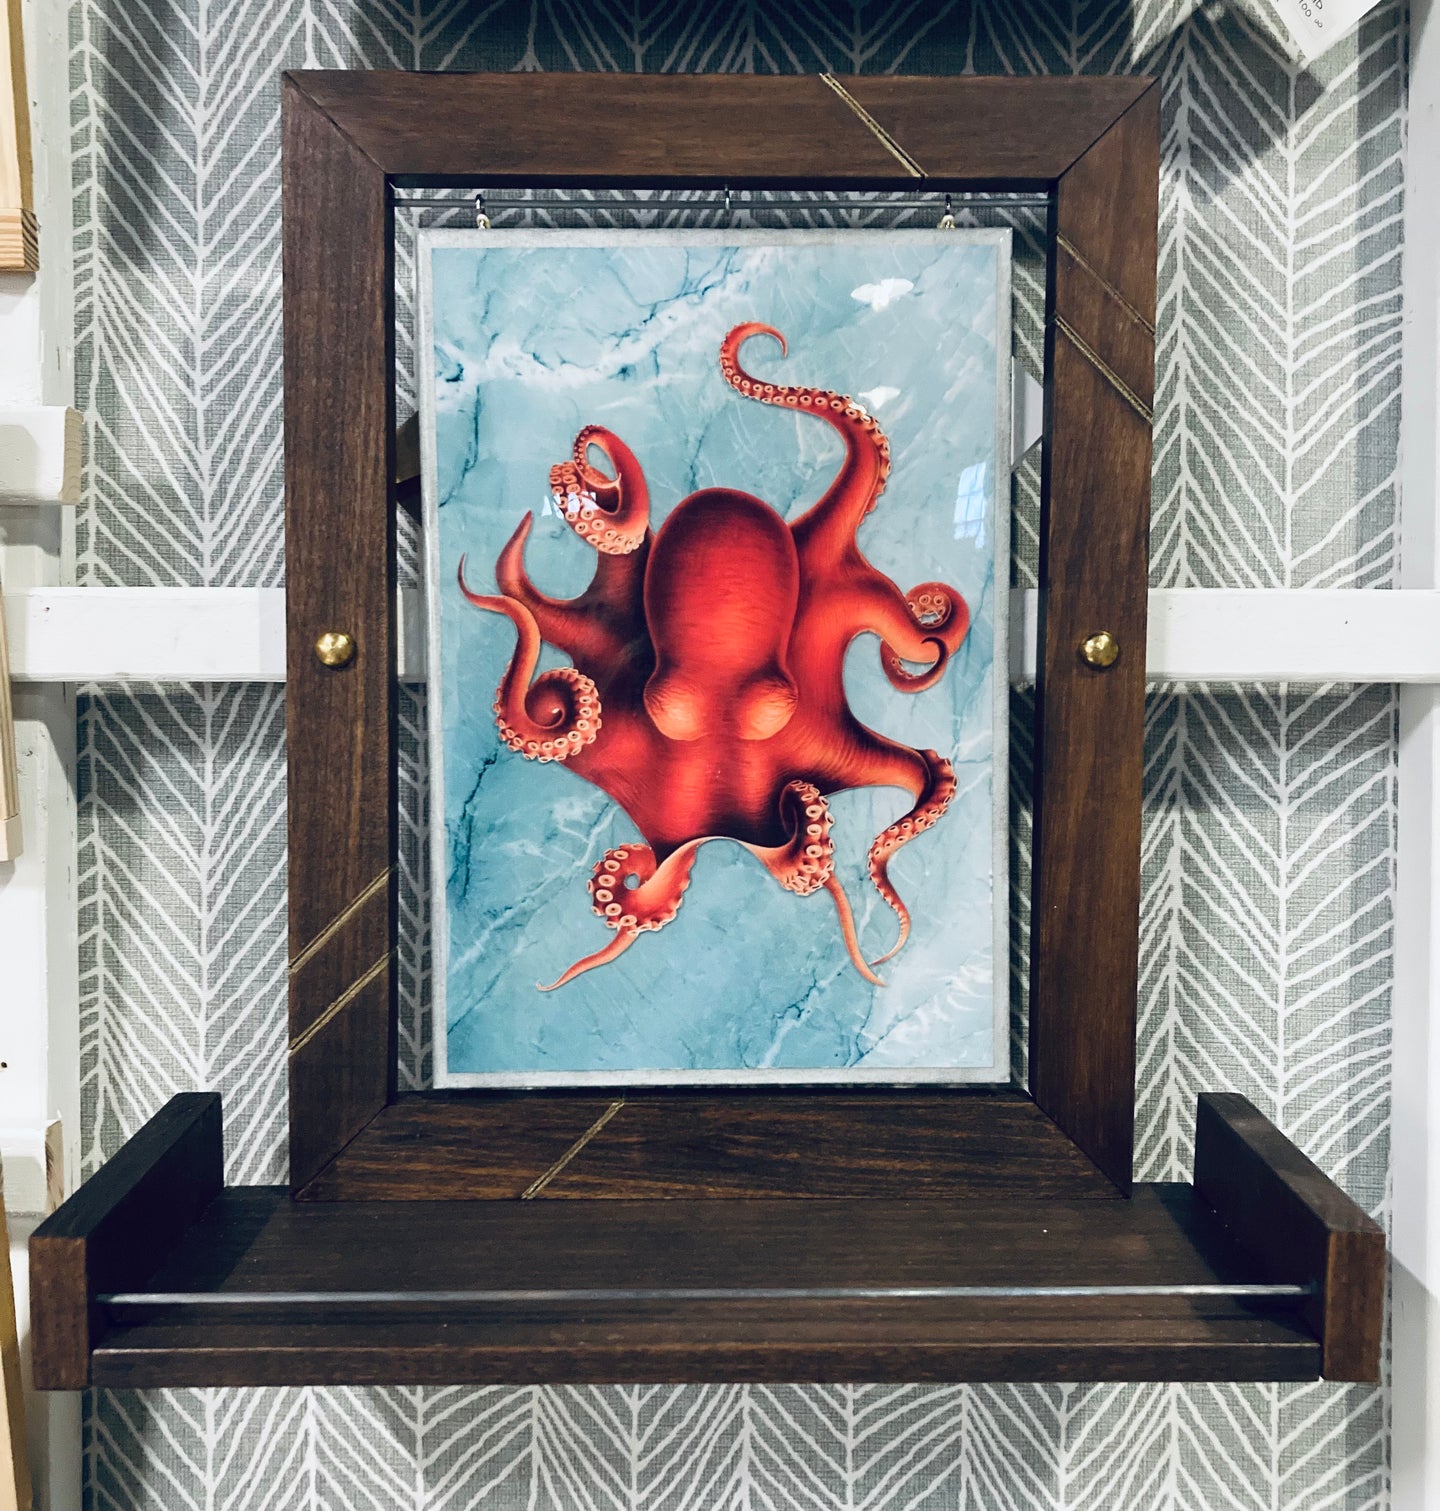 Hand-poured Octopus Art in Handmade Frame